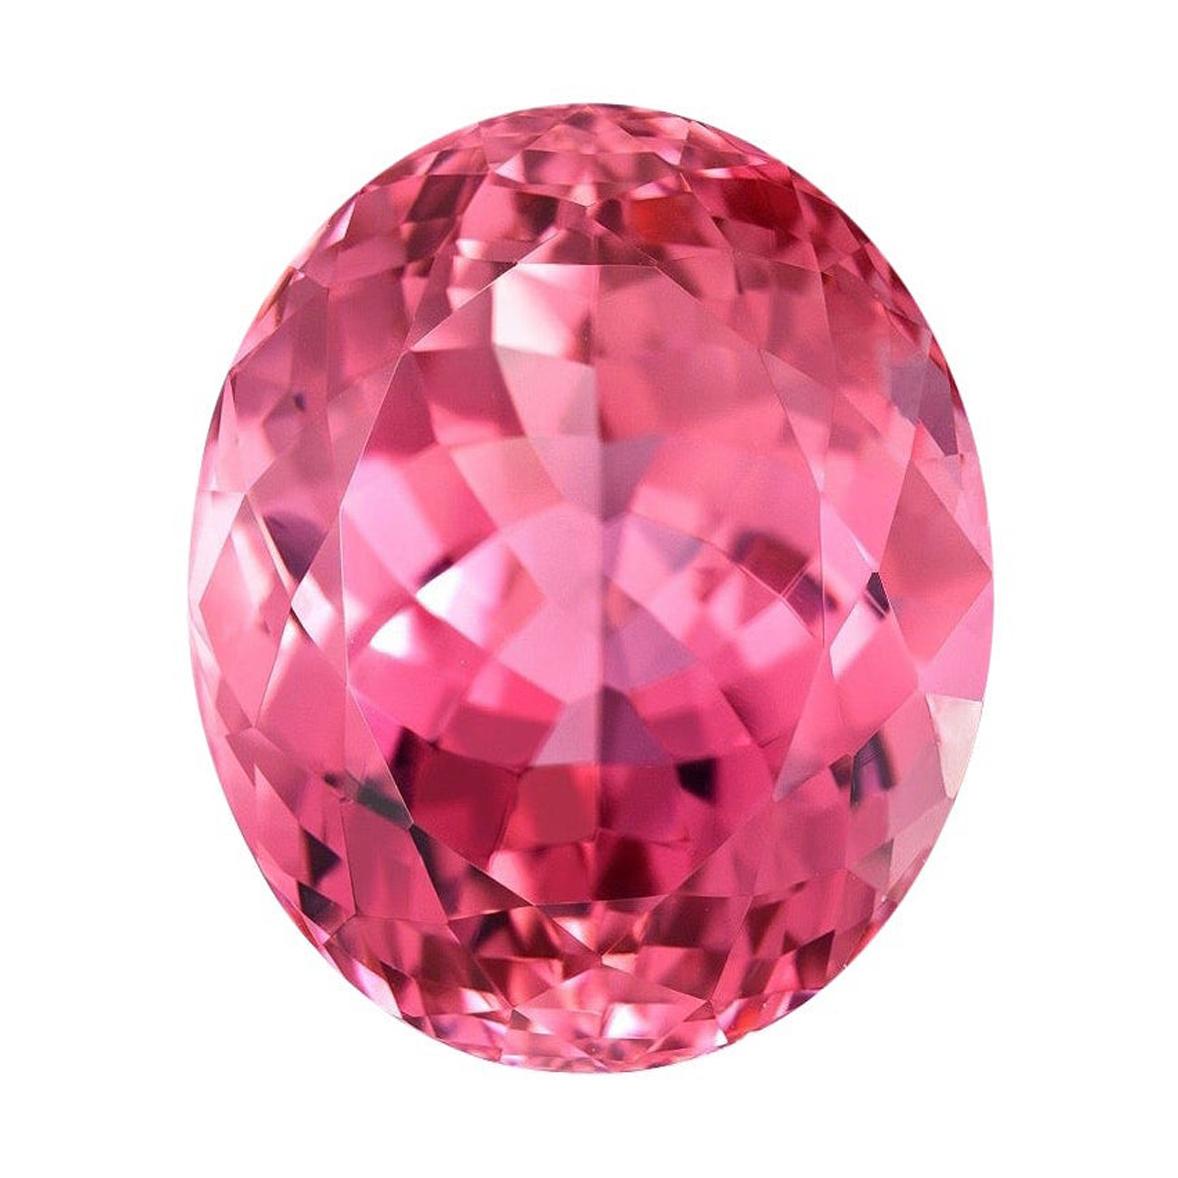 Pink Tourmaline Ring Gem 29.79 Carat Oval Loose Gemstone